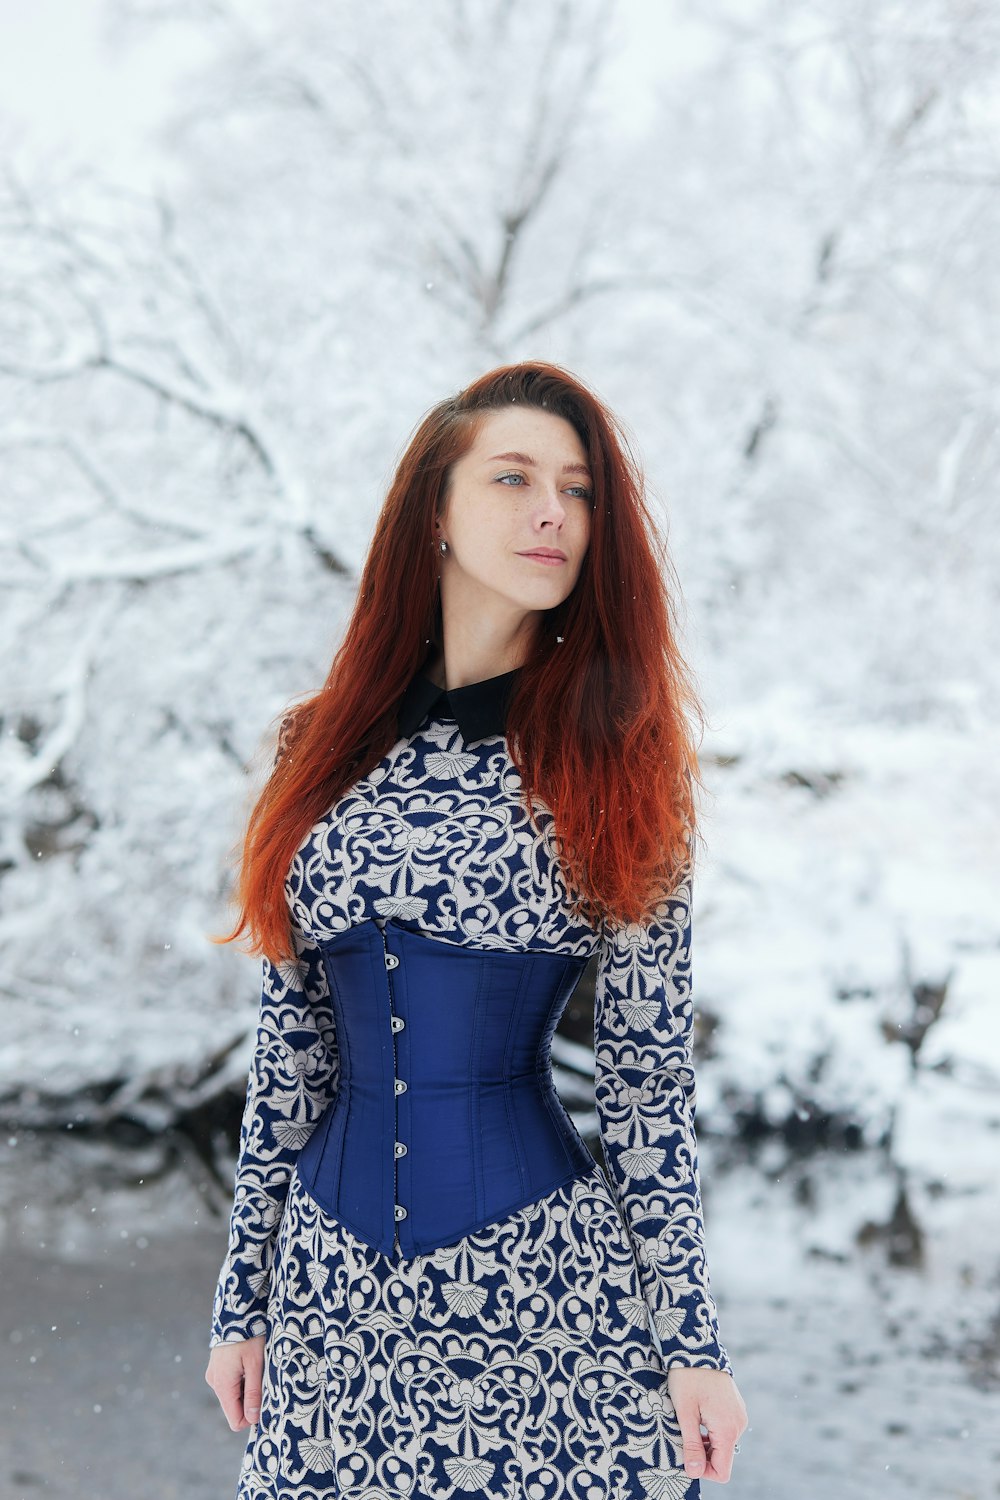 Frau in schwarz-weißem langärmeligem Kleid, die tagsüber auf schneebedecktem Boden steht